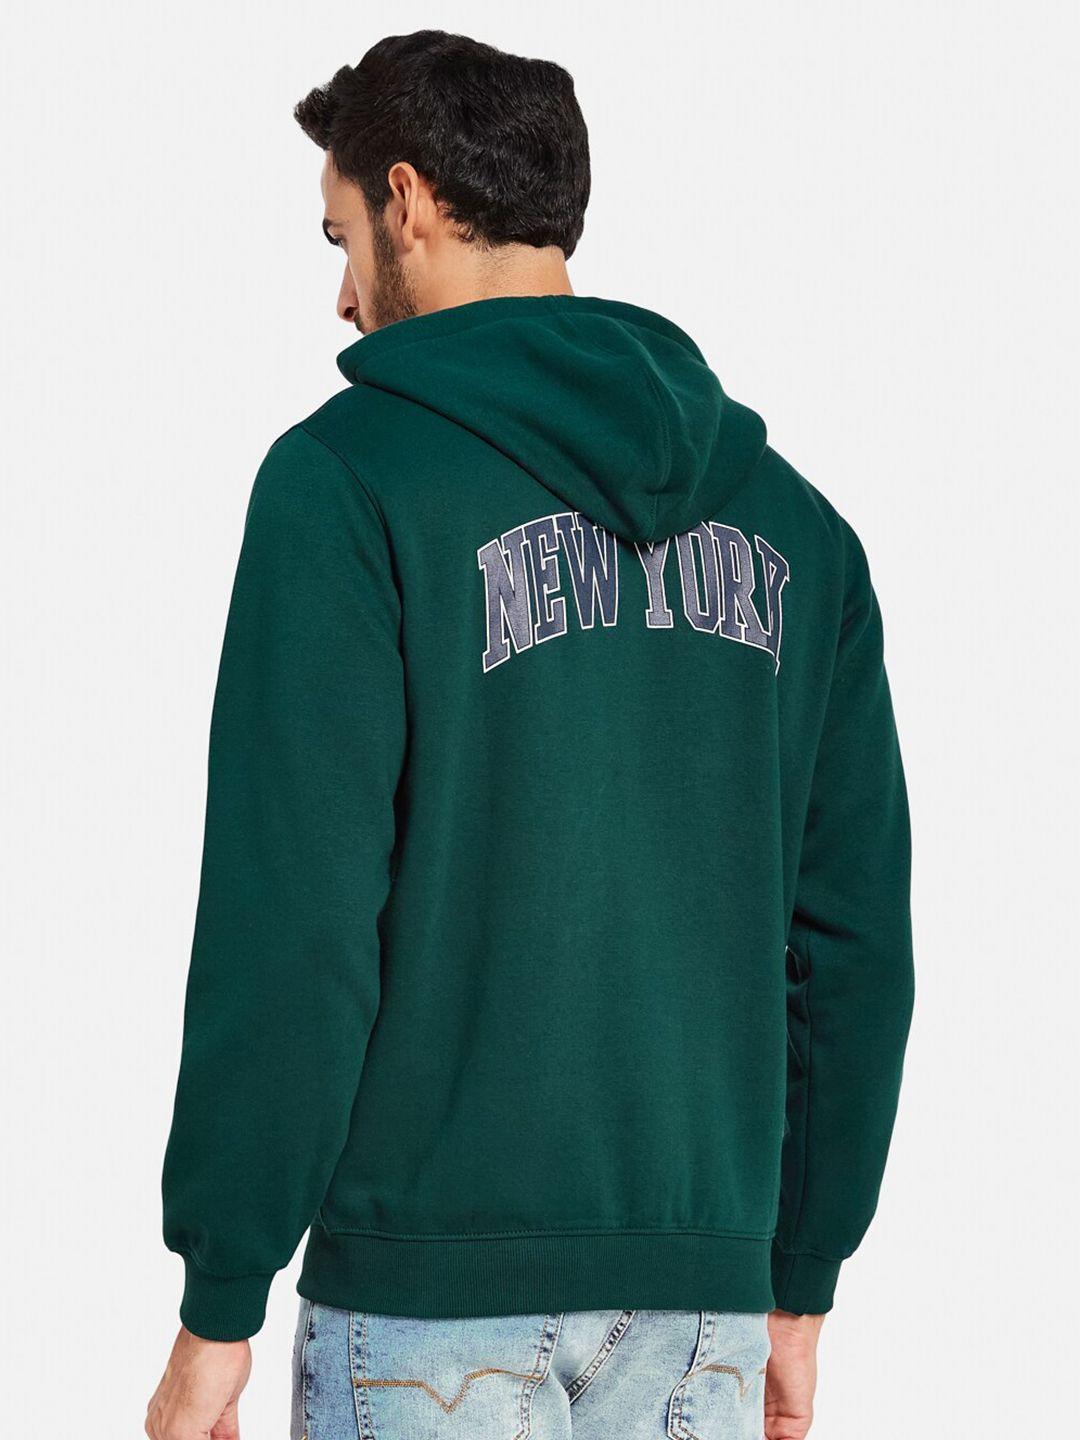 octave typography printed hooded fleece front-open sweatshirt